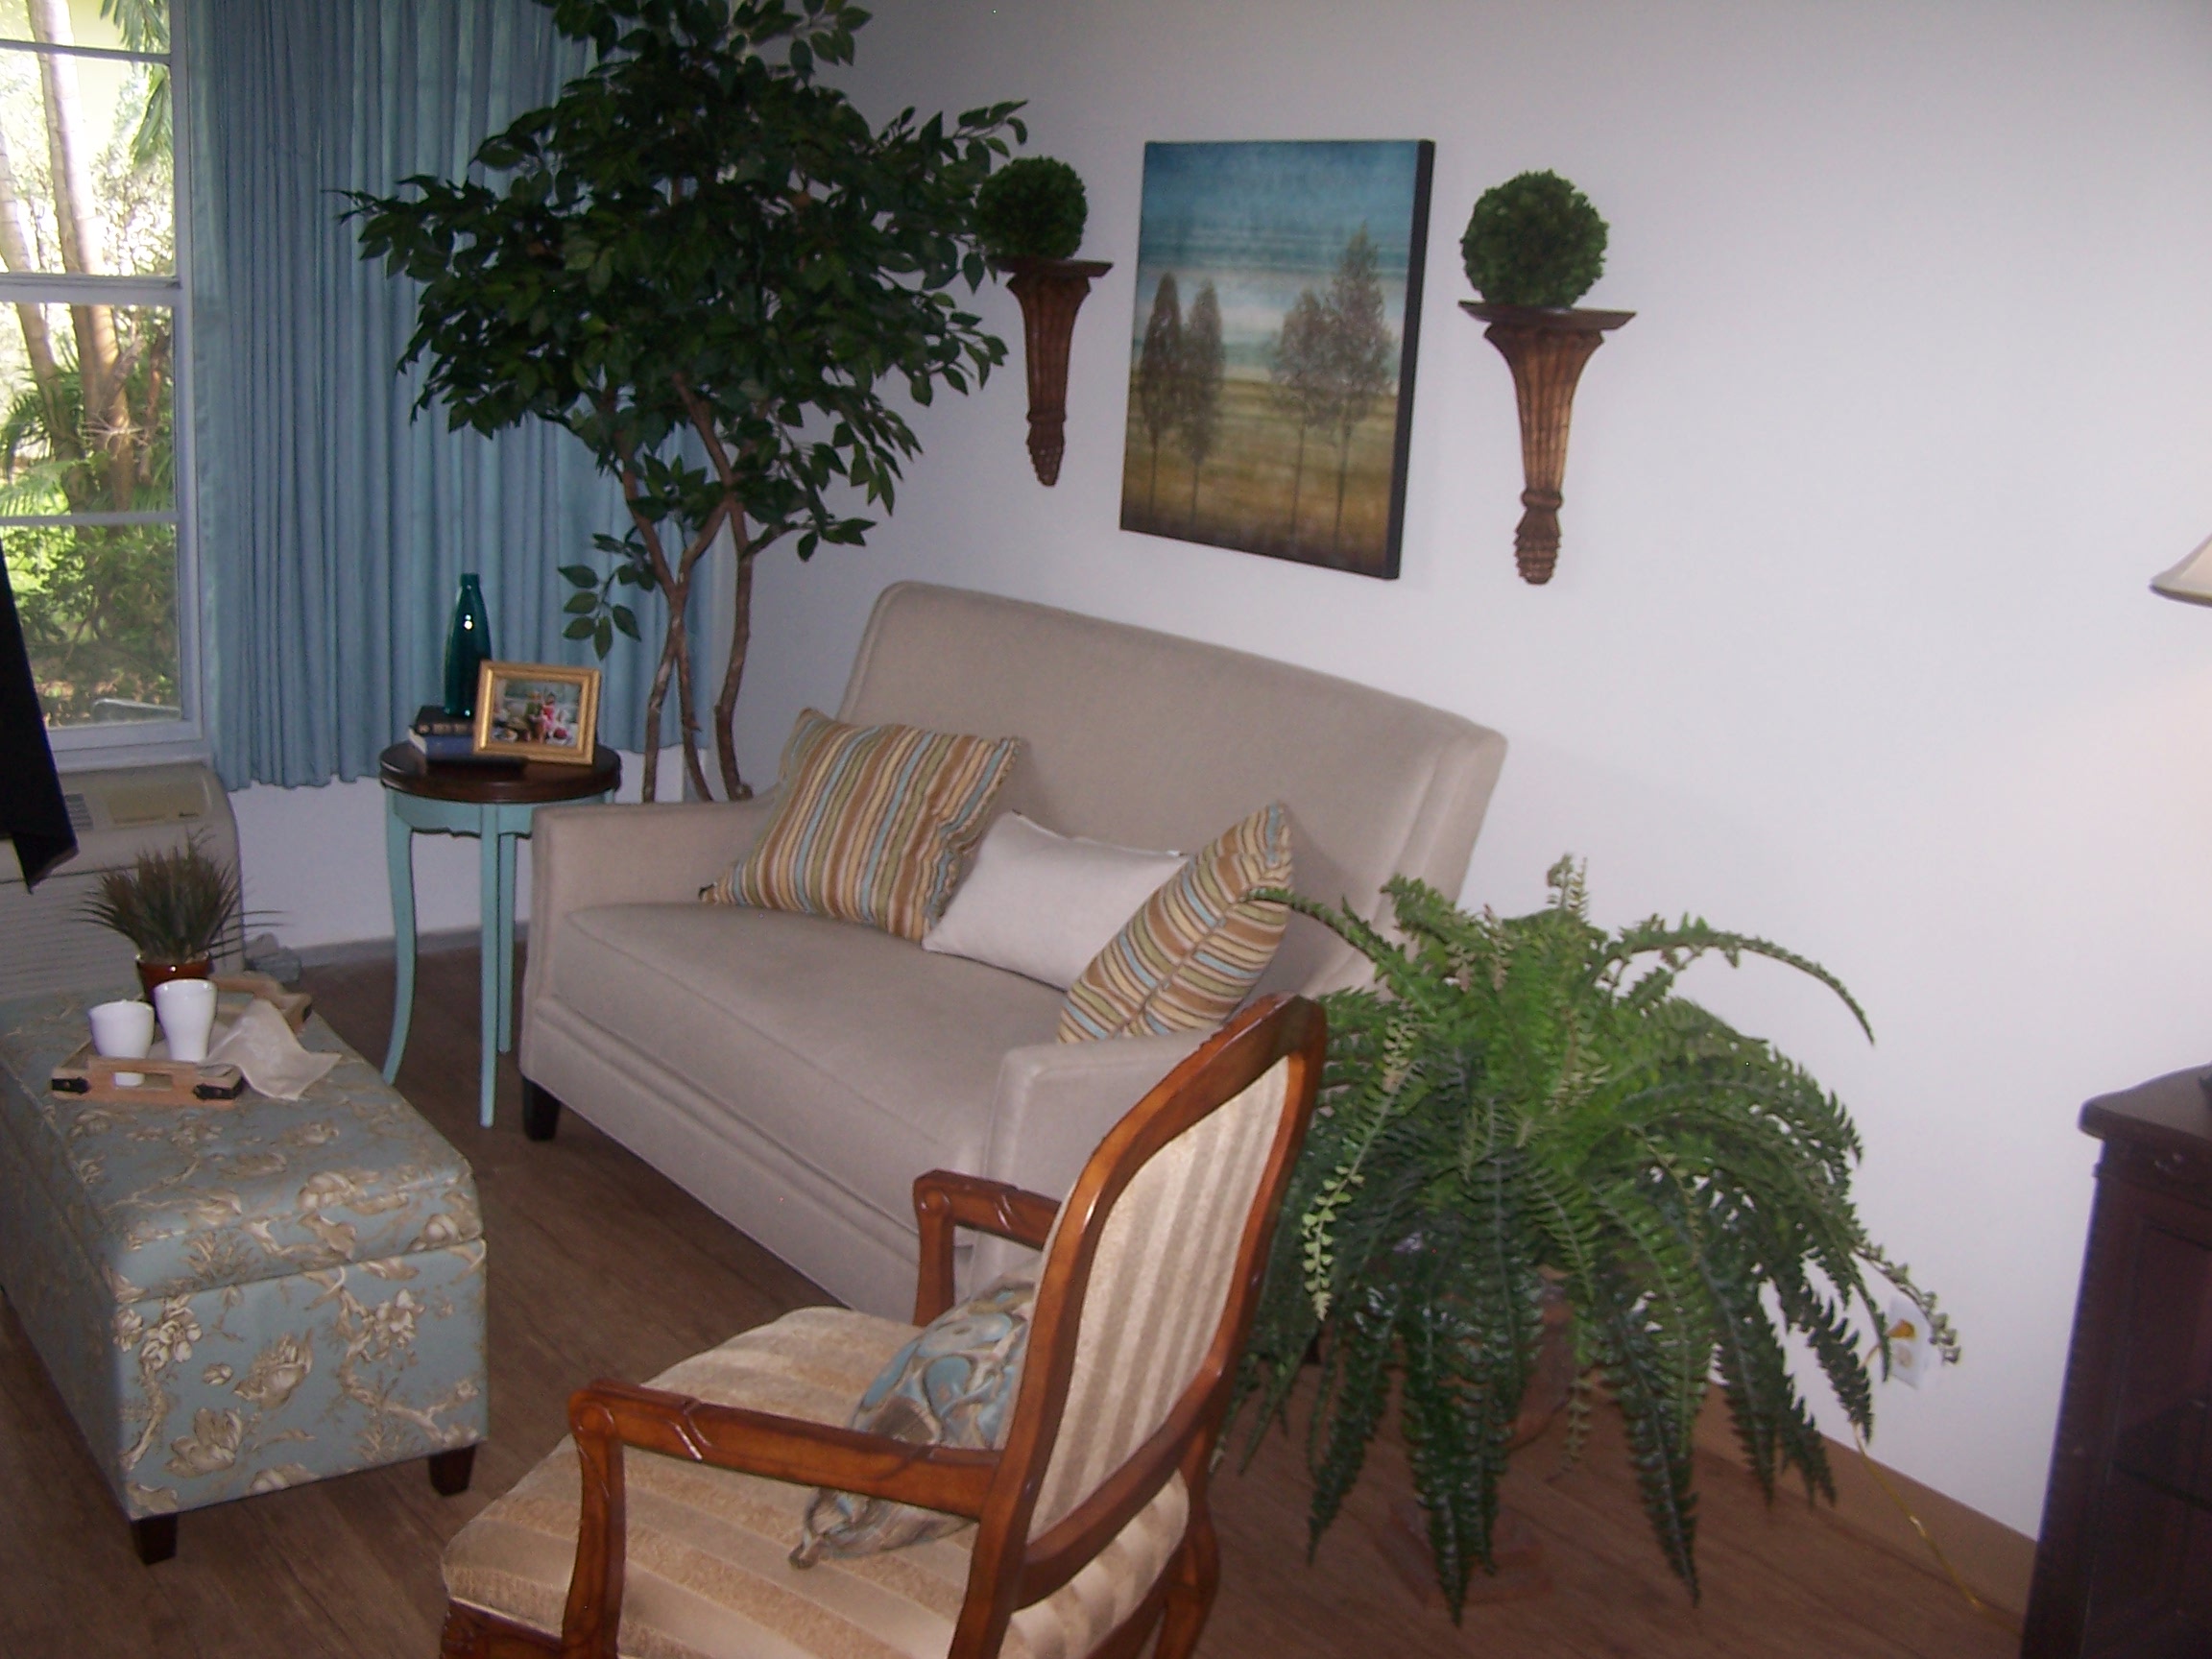 Lantanan suomalaisen lepokodin huoneet ovat avarat ja valoisat. Moderni kalustus antaa huoneille viihtyisän ilmeen.